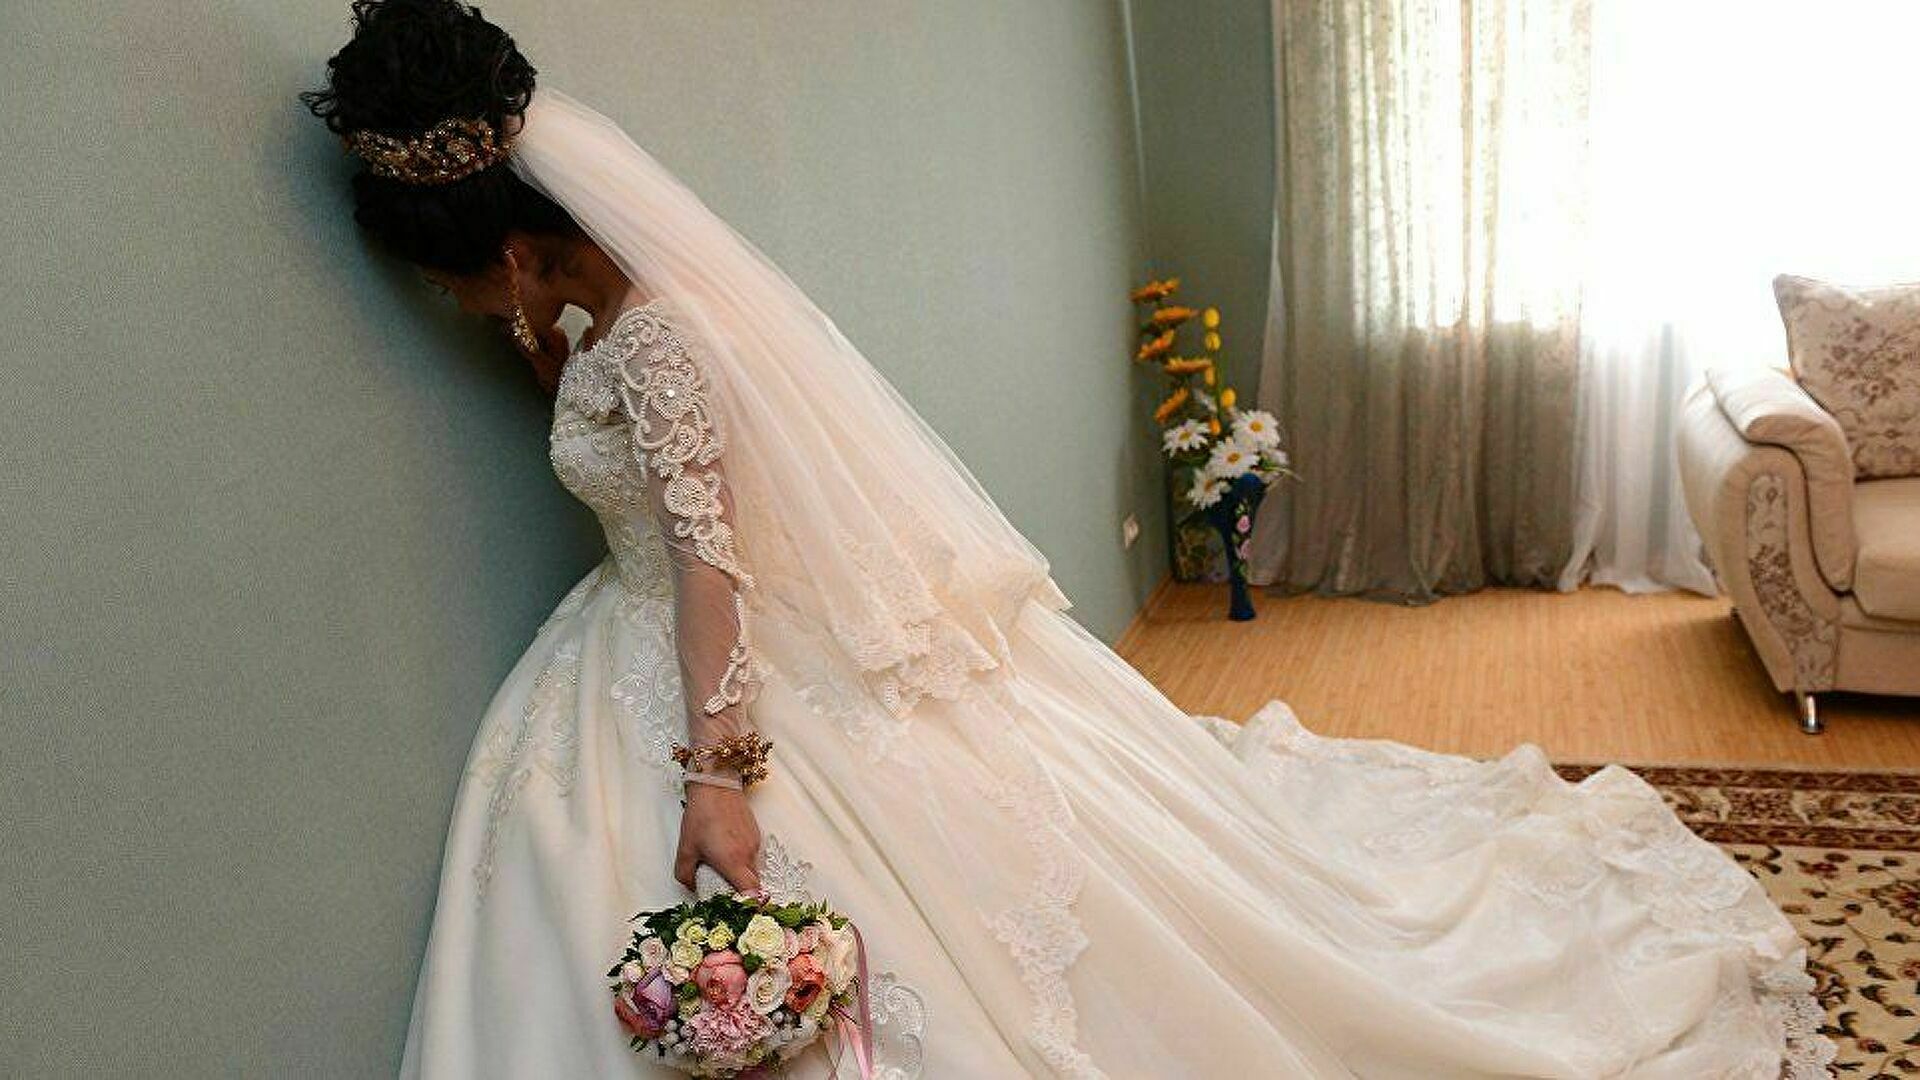 Шведку похитили в Дагестане, чтобы насильно выдать замуж